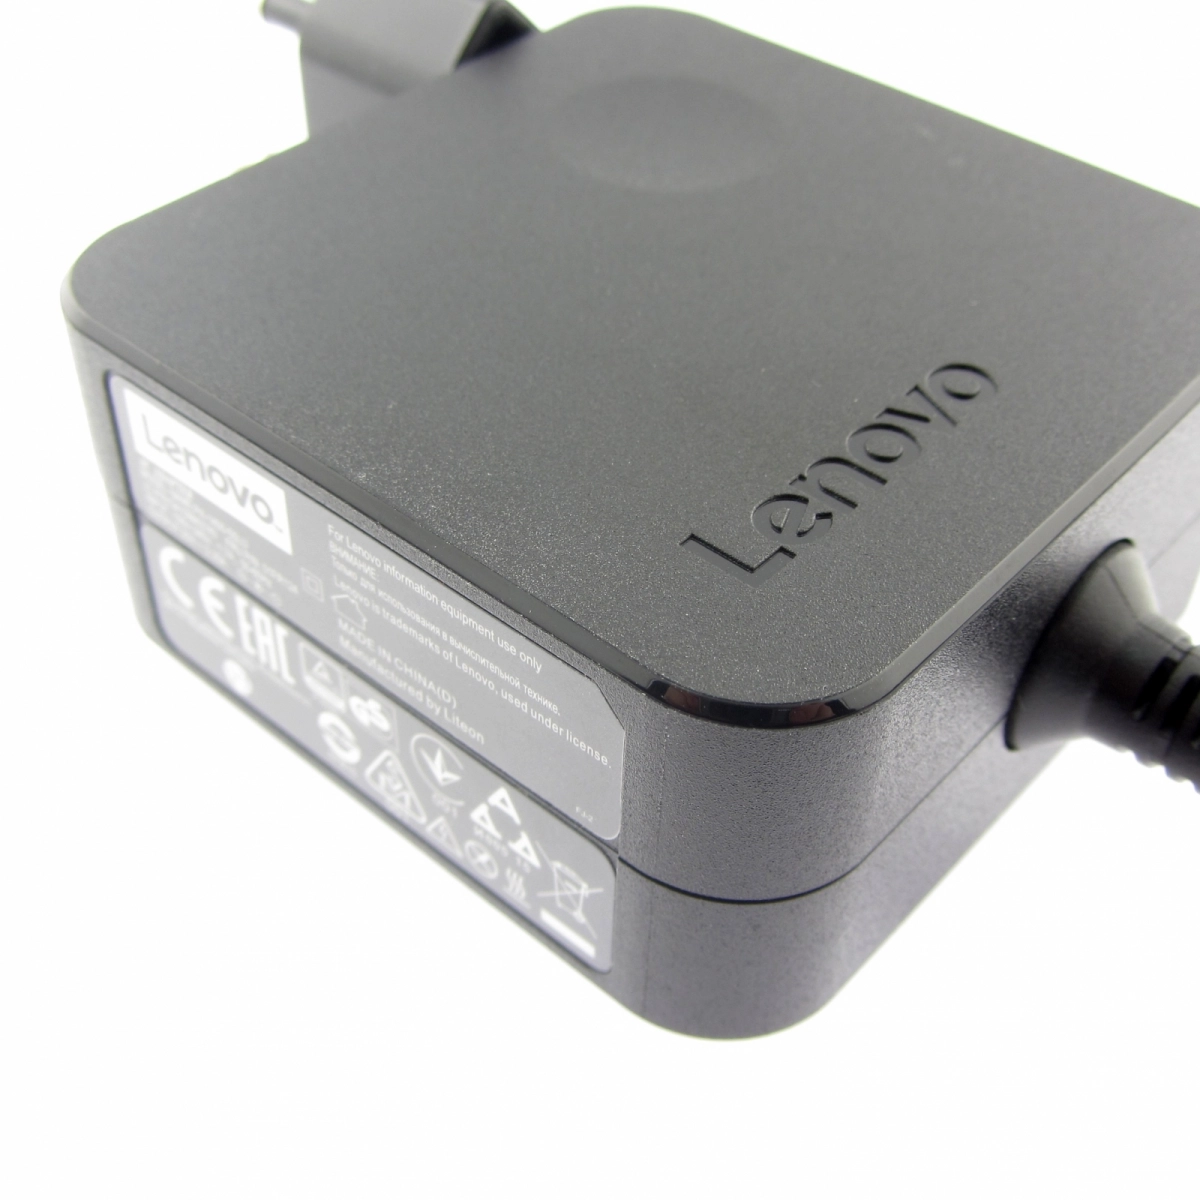 Original Netzteil für LENOVO PA-1450-55LN, 20V, 2.25A Stecker 4.0 x 1.7 mm rund, 45W